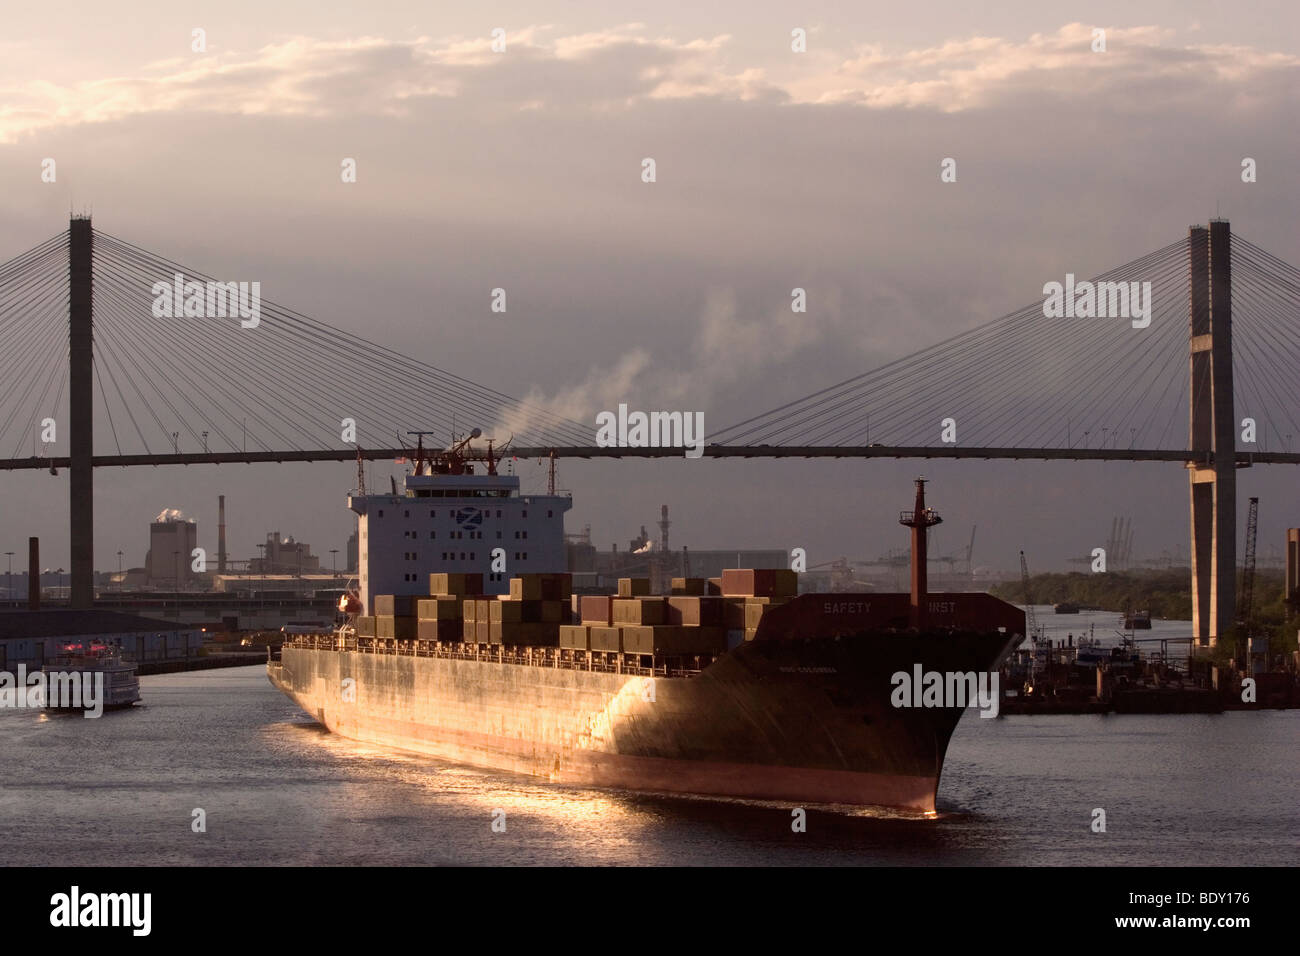 El MSC Colombia buque portacontenedores navega bajo la Talmadge Memorial Bridge sobre el Río Savannah Foto de stock